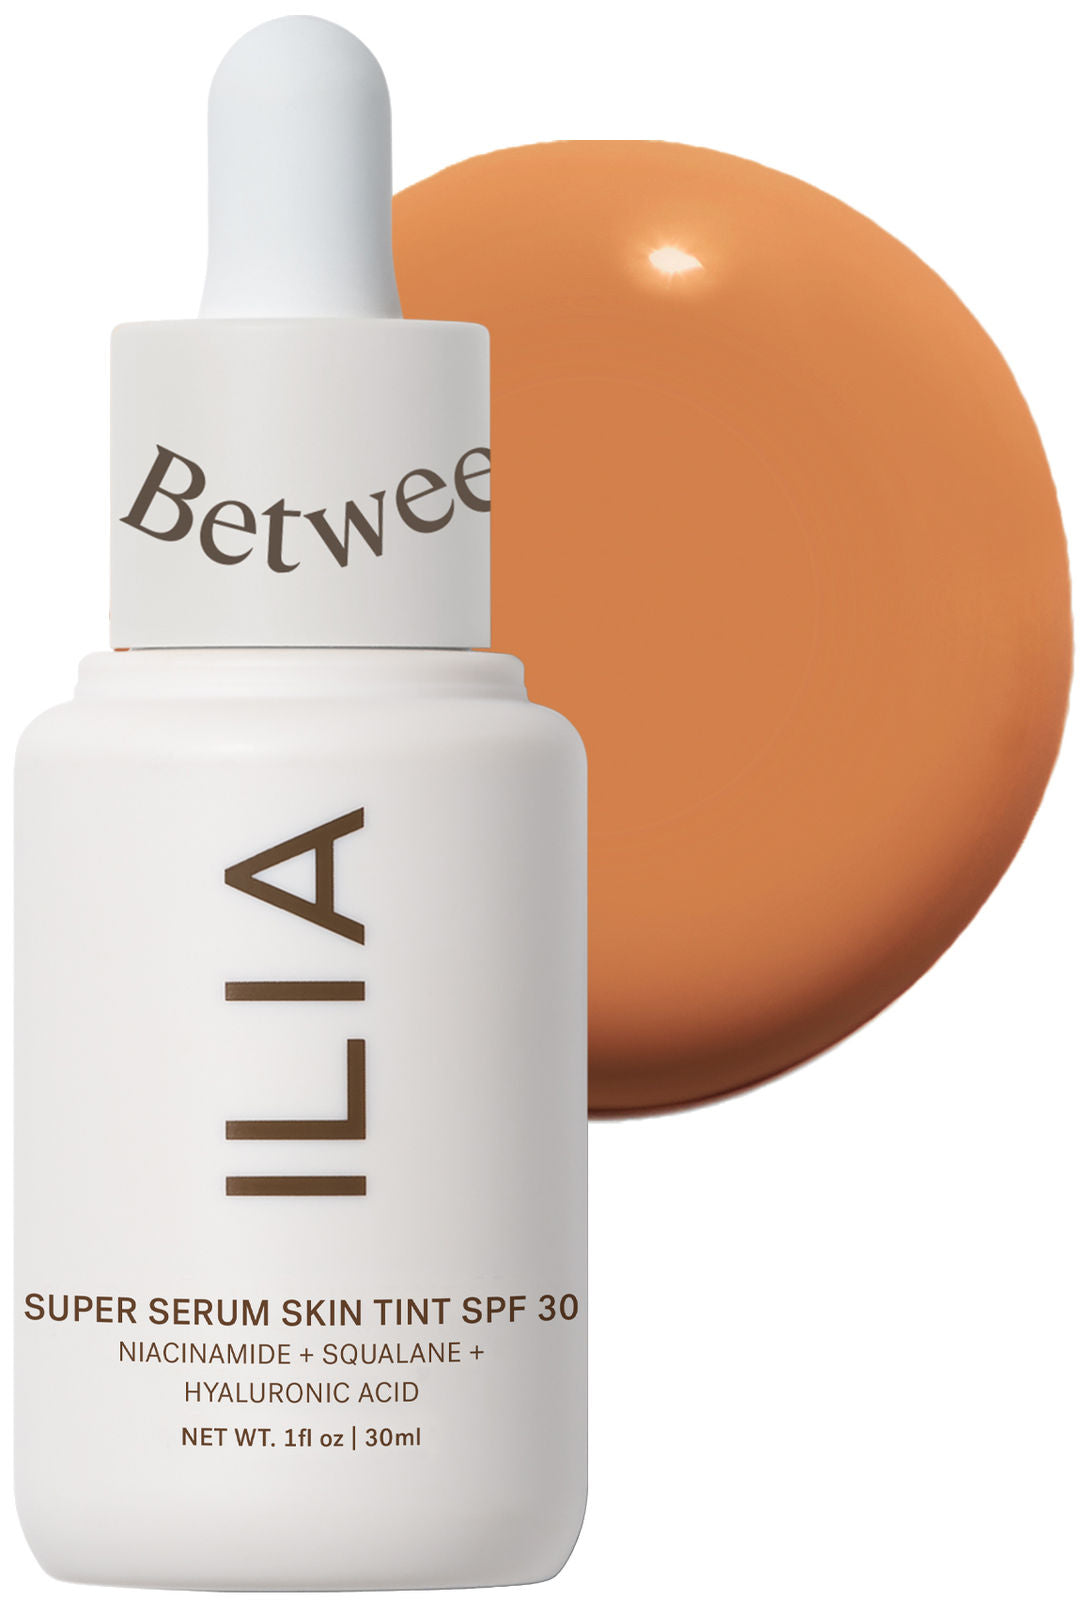 ILIA Super Serum Skin Tint SPF 30 - Rialto ST13.5